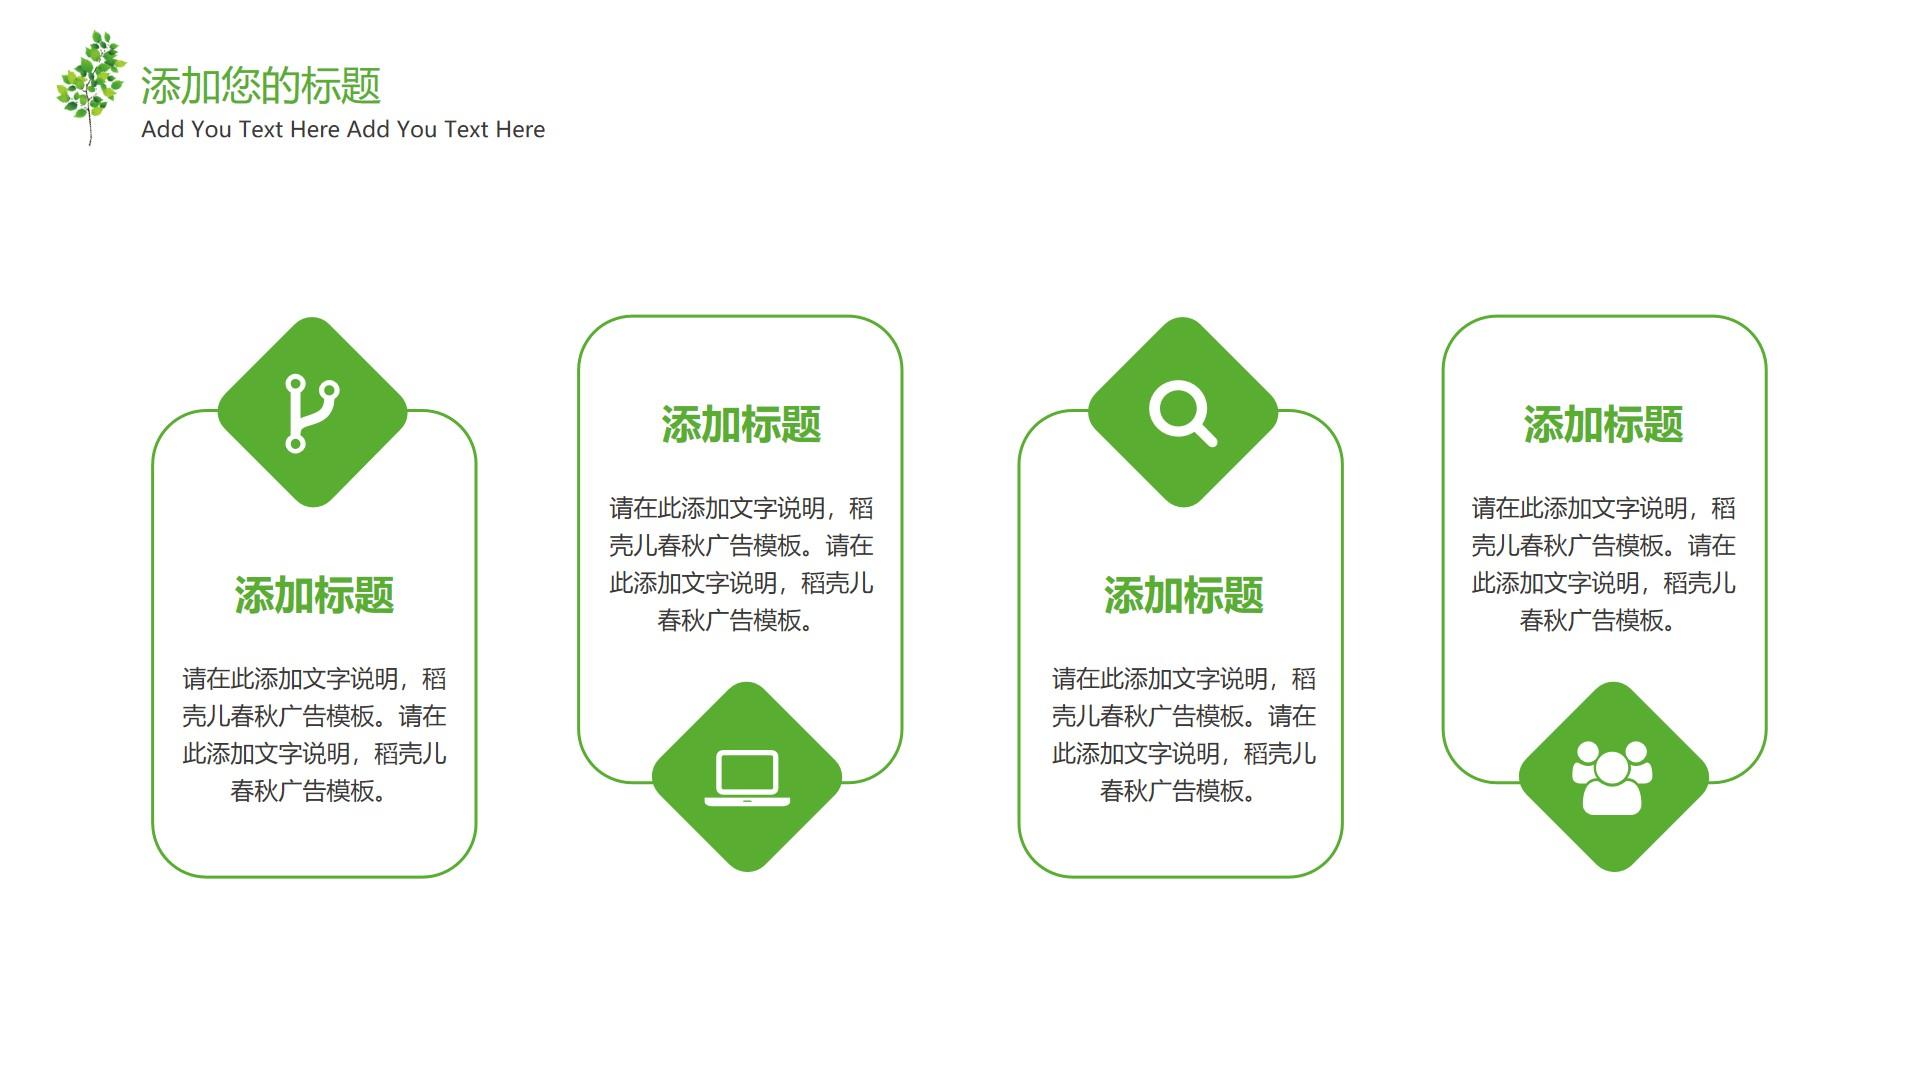 教育教学绿色白色简洁素雅text 稻壳 春秋 广告 add云素材PPT模板1672673874306